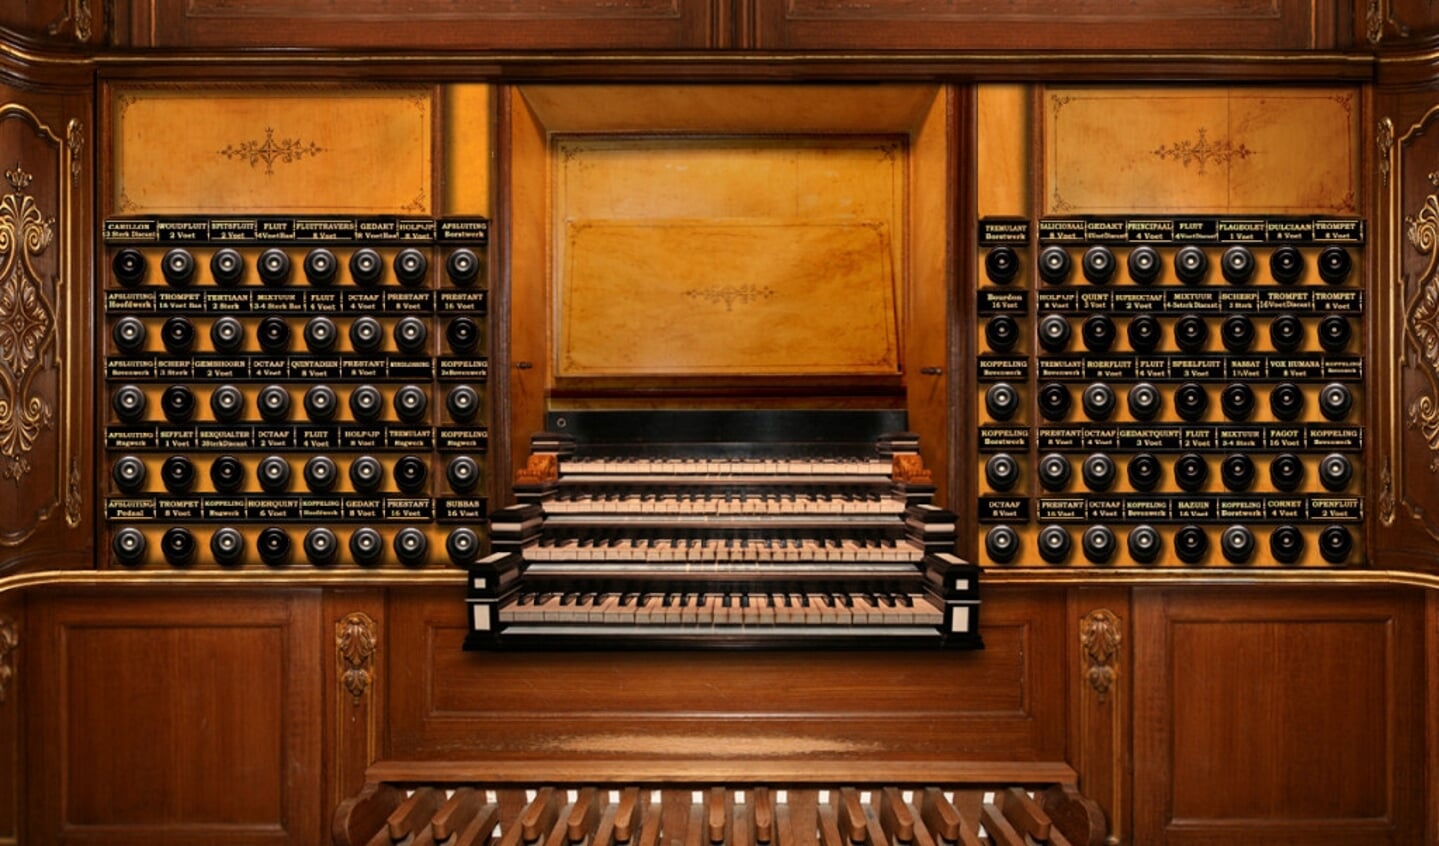 De speeltafel van het Hinsz-orgel in de Bovenkerk